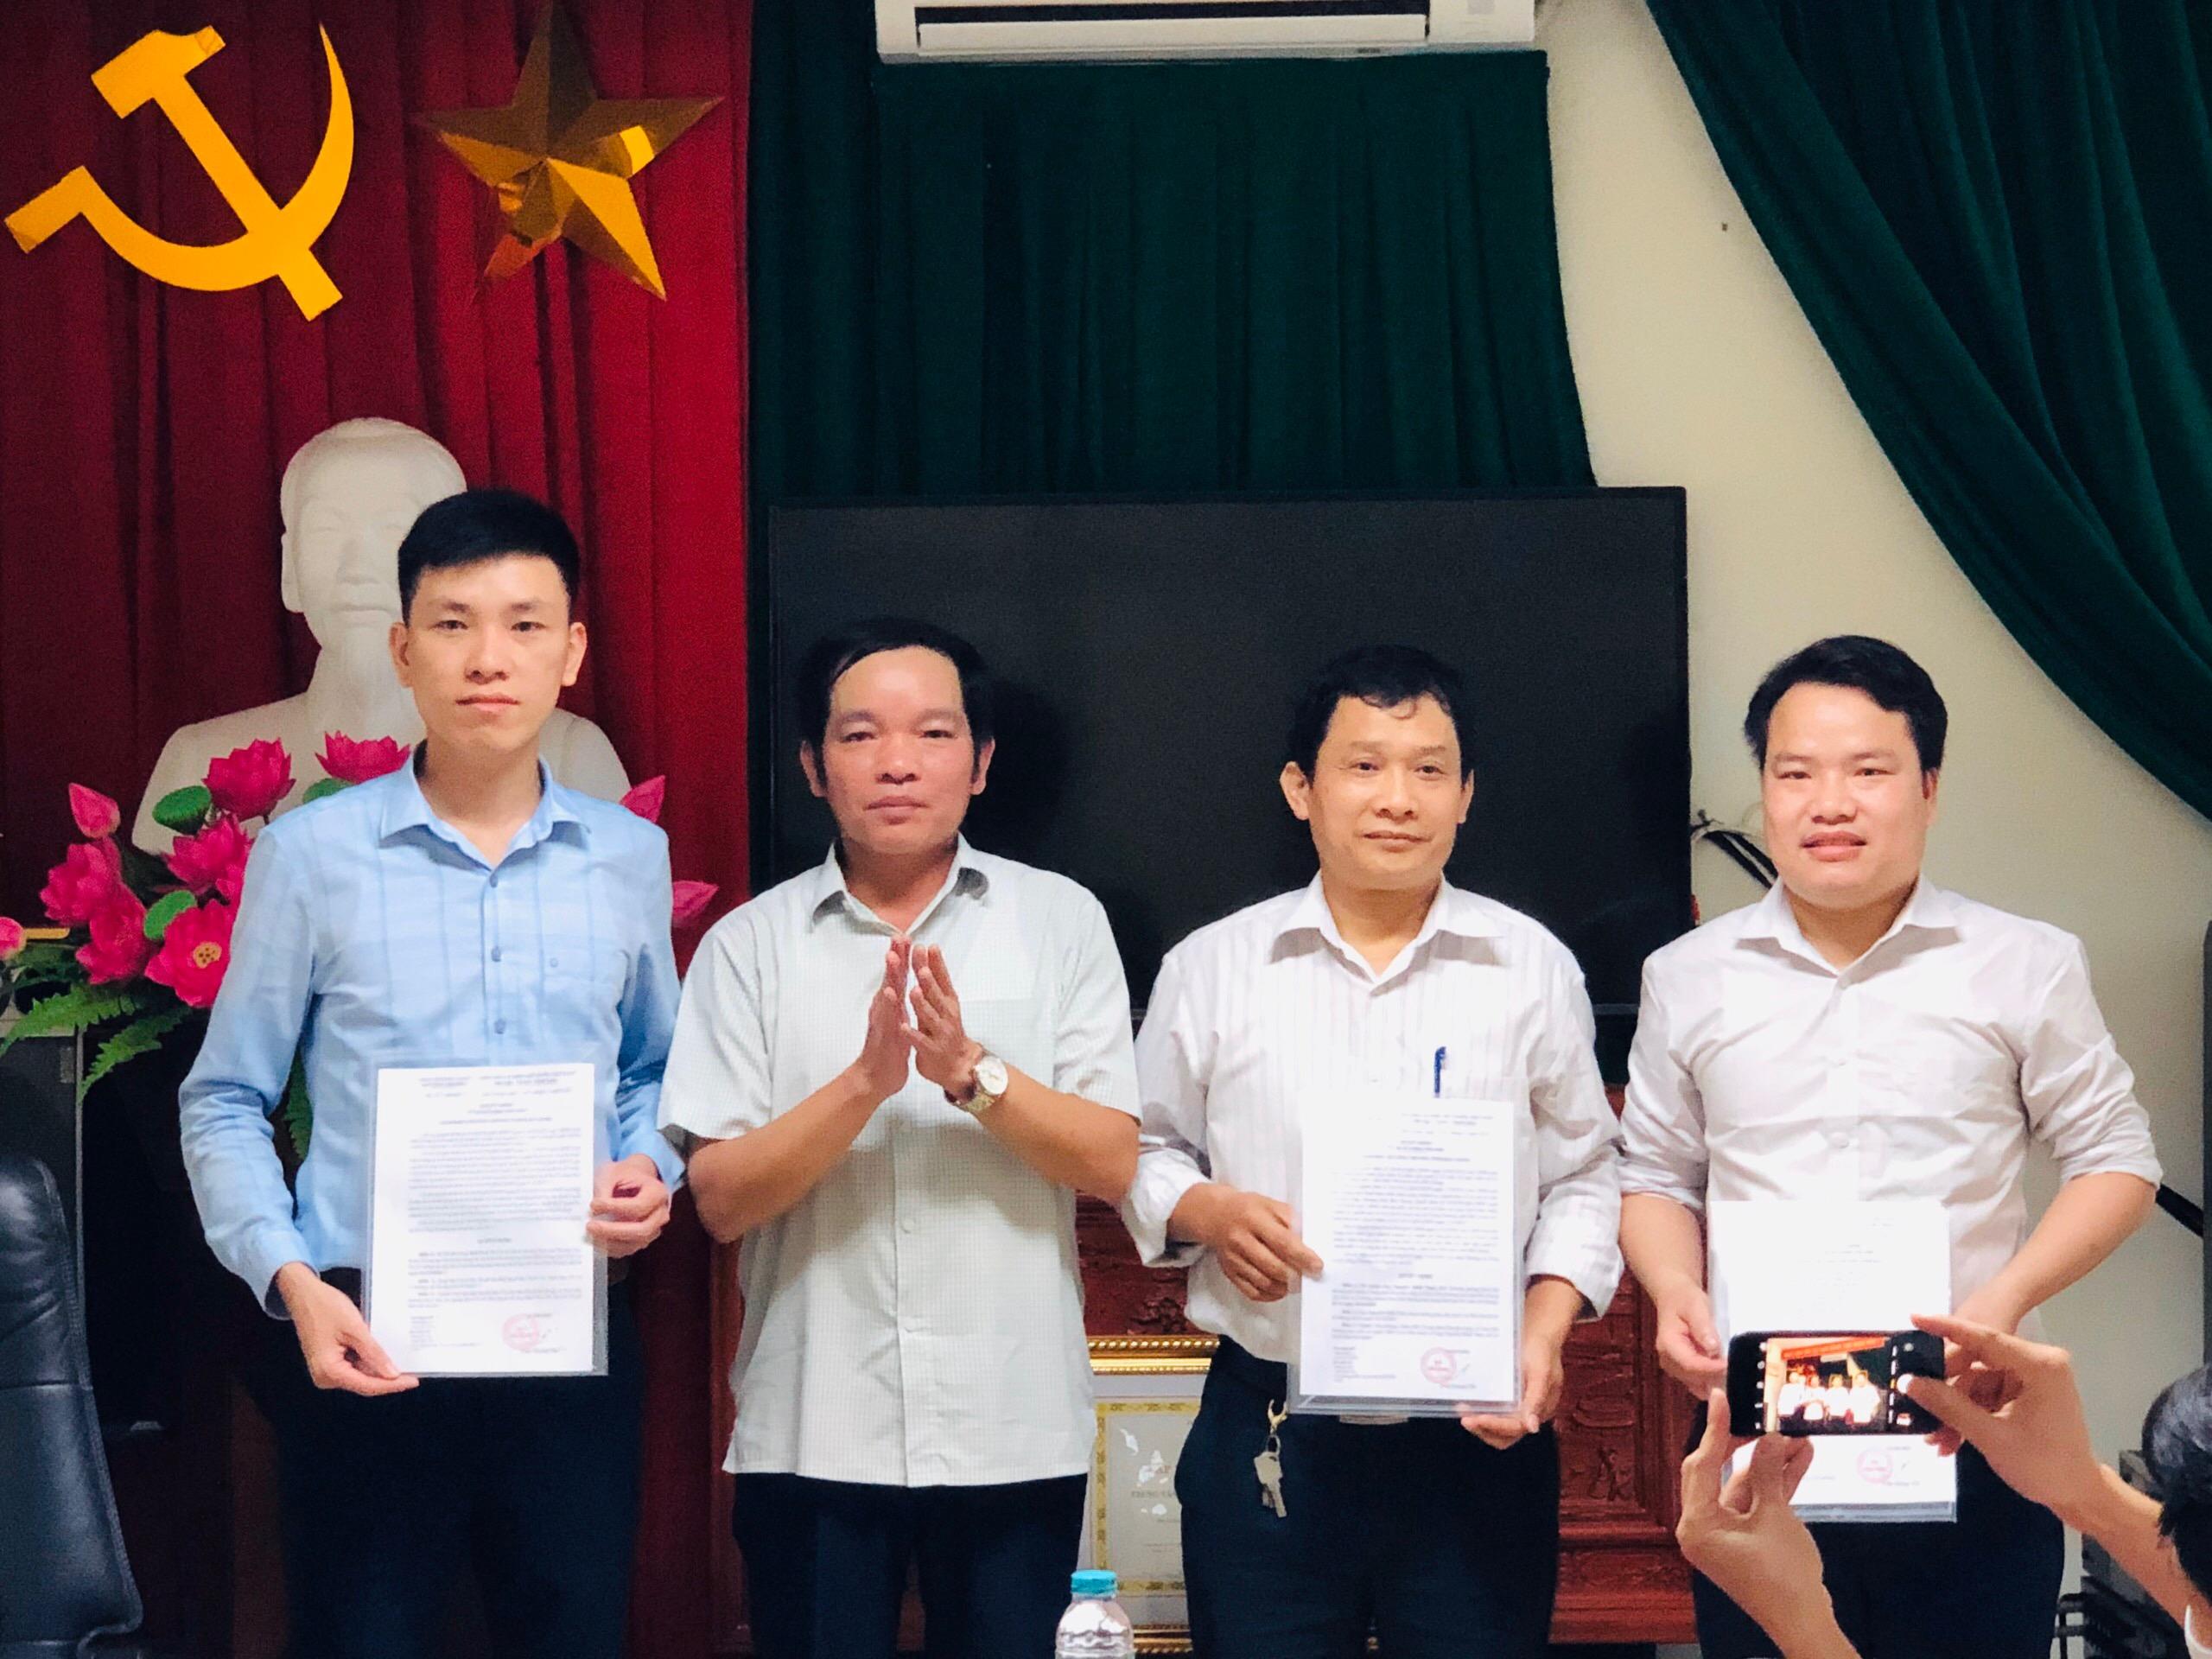 Công bố quyết định bổ nhiệm các chức danh trưởng phòng, phó phòng của Trung tâm Khuyến công và Xúc tiến thương mại Bắc Giang